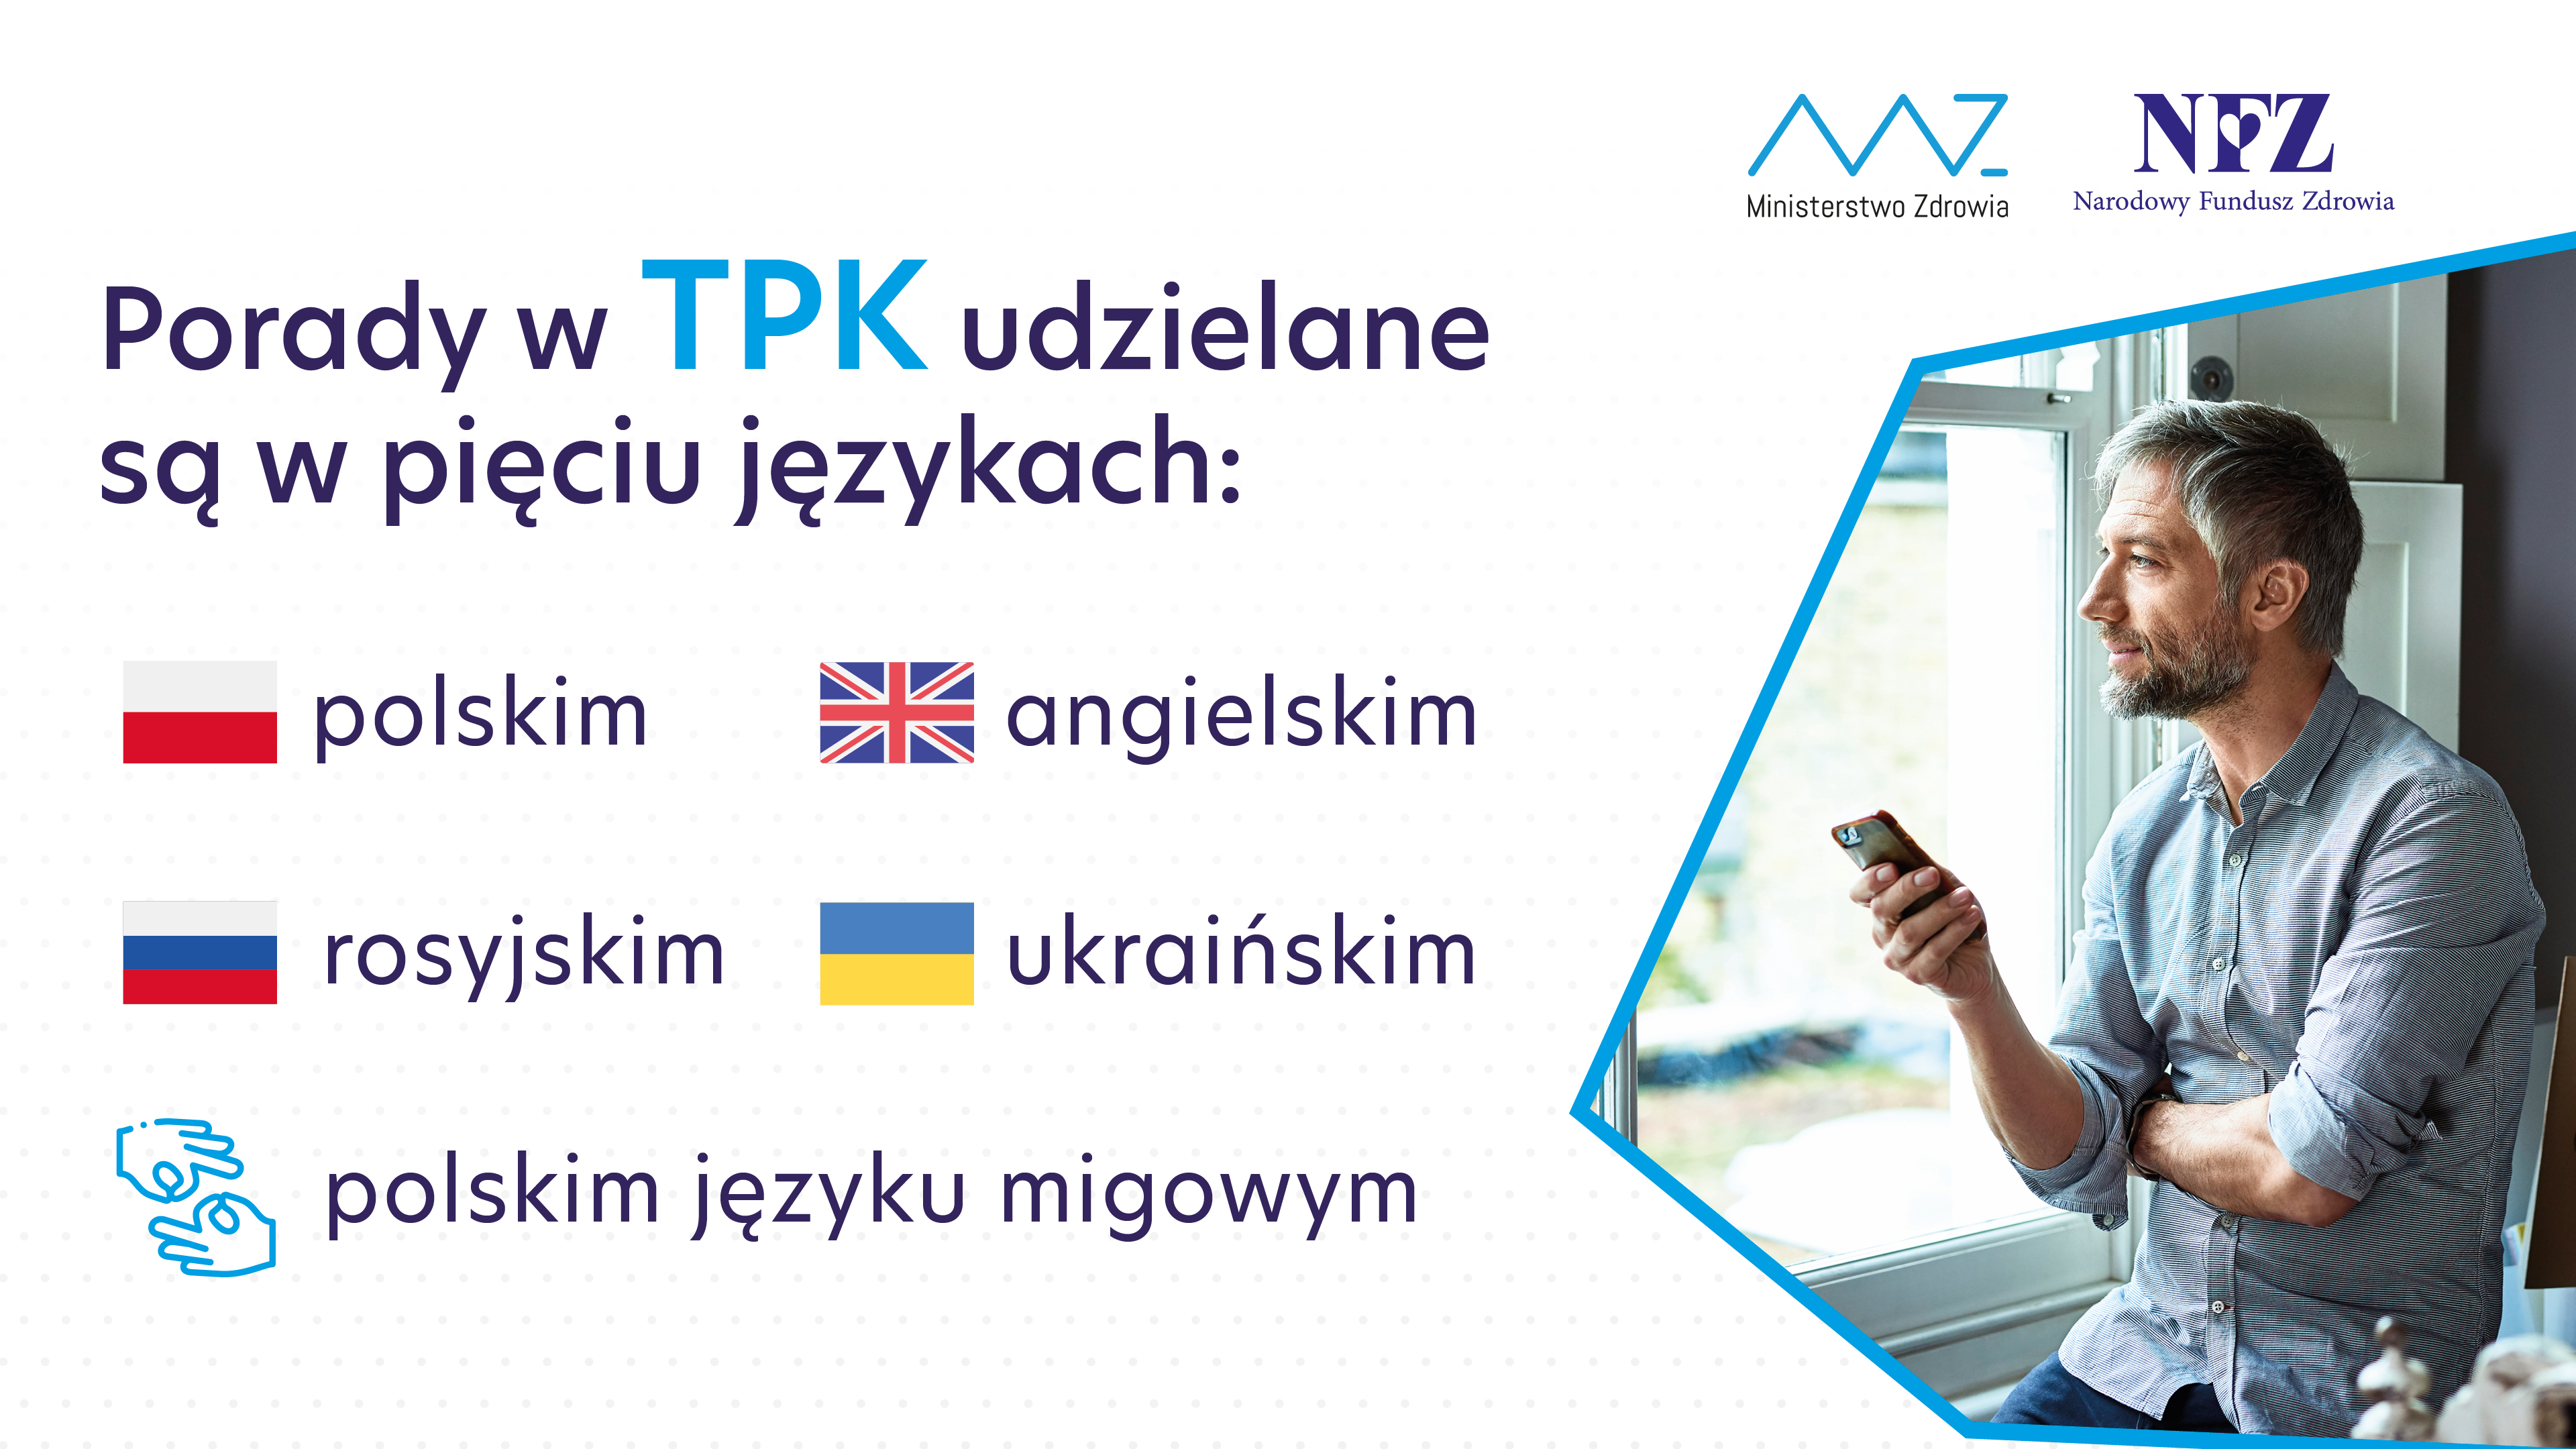 Porady w TPK udzielane są w pięciu językach: polskim, angielskim, rosyjskim, ukraińskim i polskim języku migowym